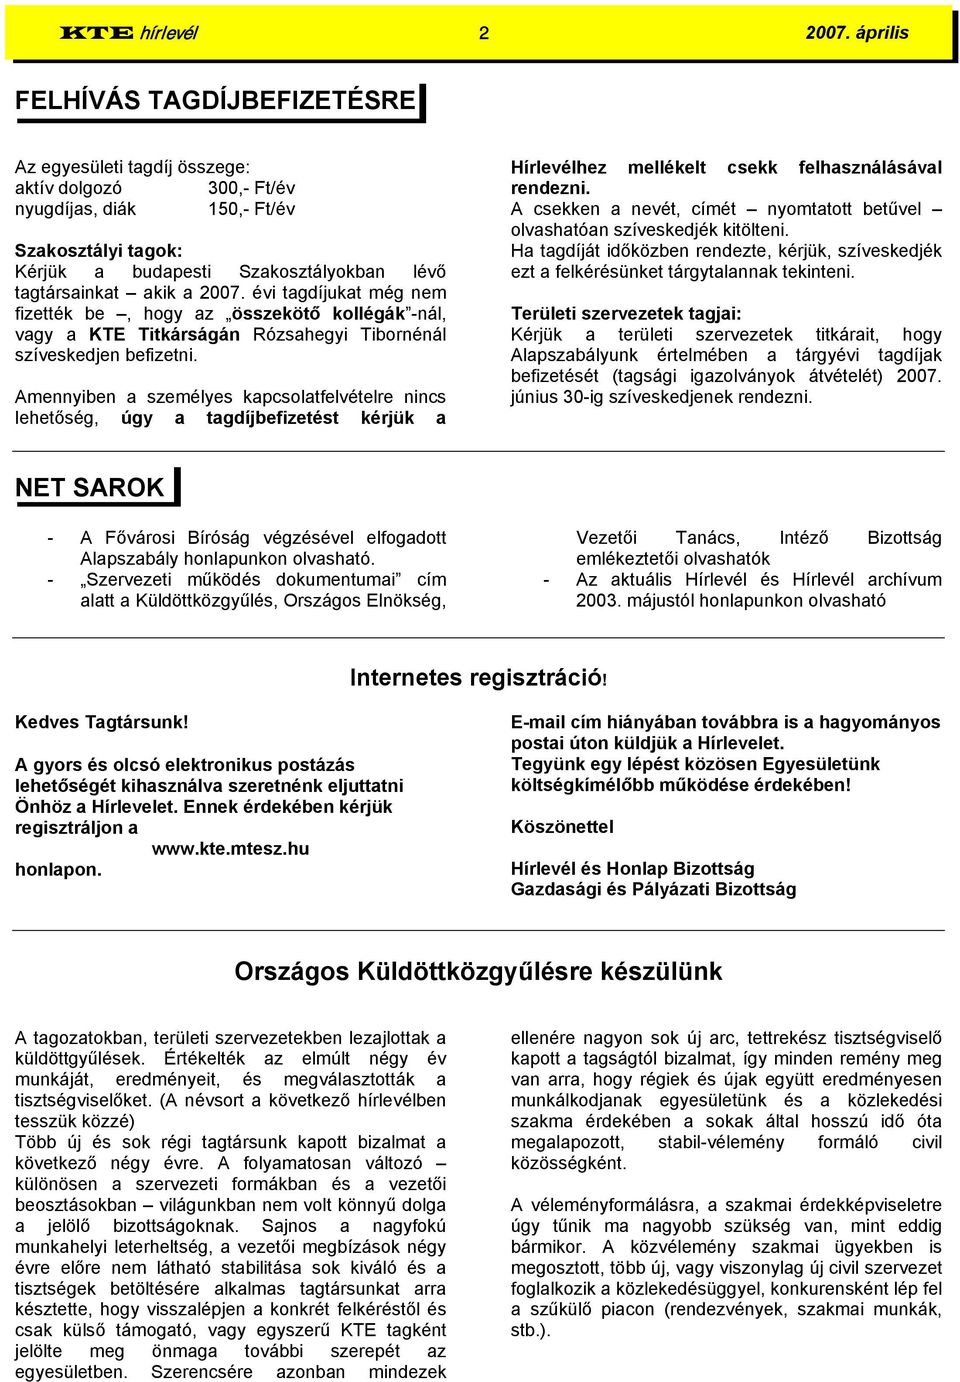 a 2007. évi tagdíjukat még nem fizették be, hogy az összekötő kollégák -nál, vagy a KTE Titkárságán Rózsahegyi Tibornénál szíveskedjen befizetni.